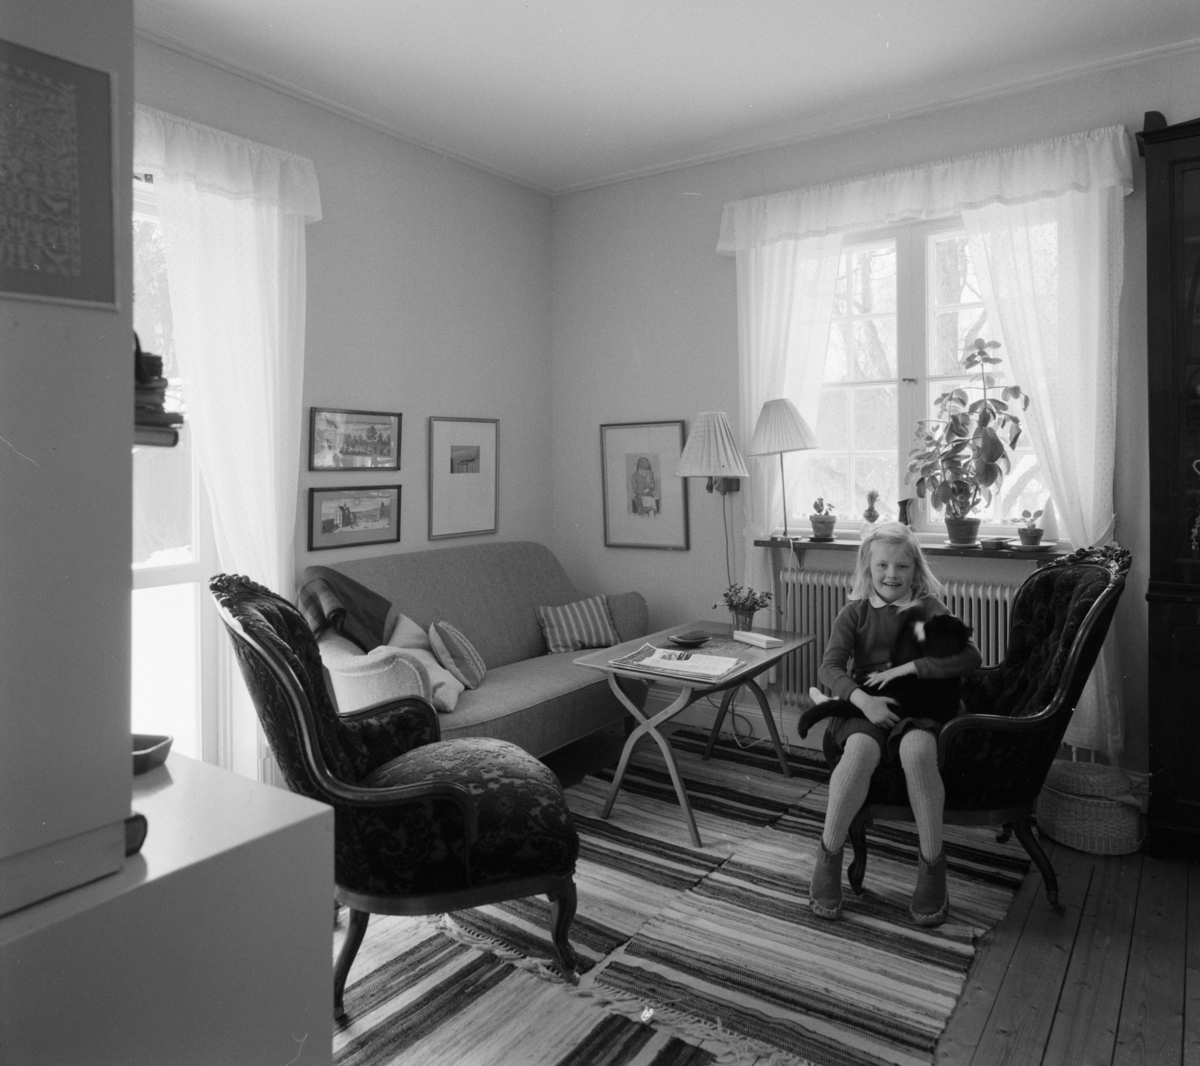 villa Ahlgren
Interiör, litet förmak med läsande flicka vid sittgrupp med soffa och emmastolar